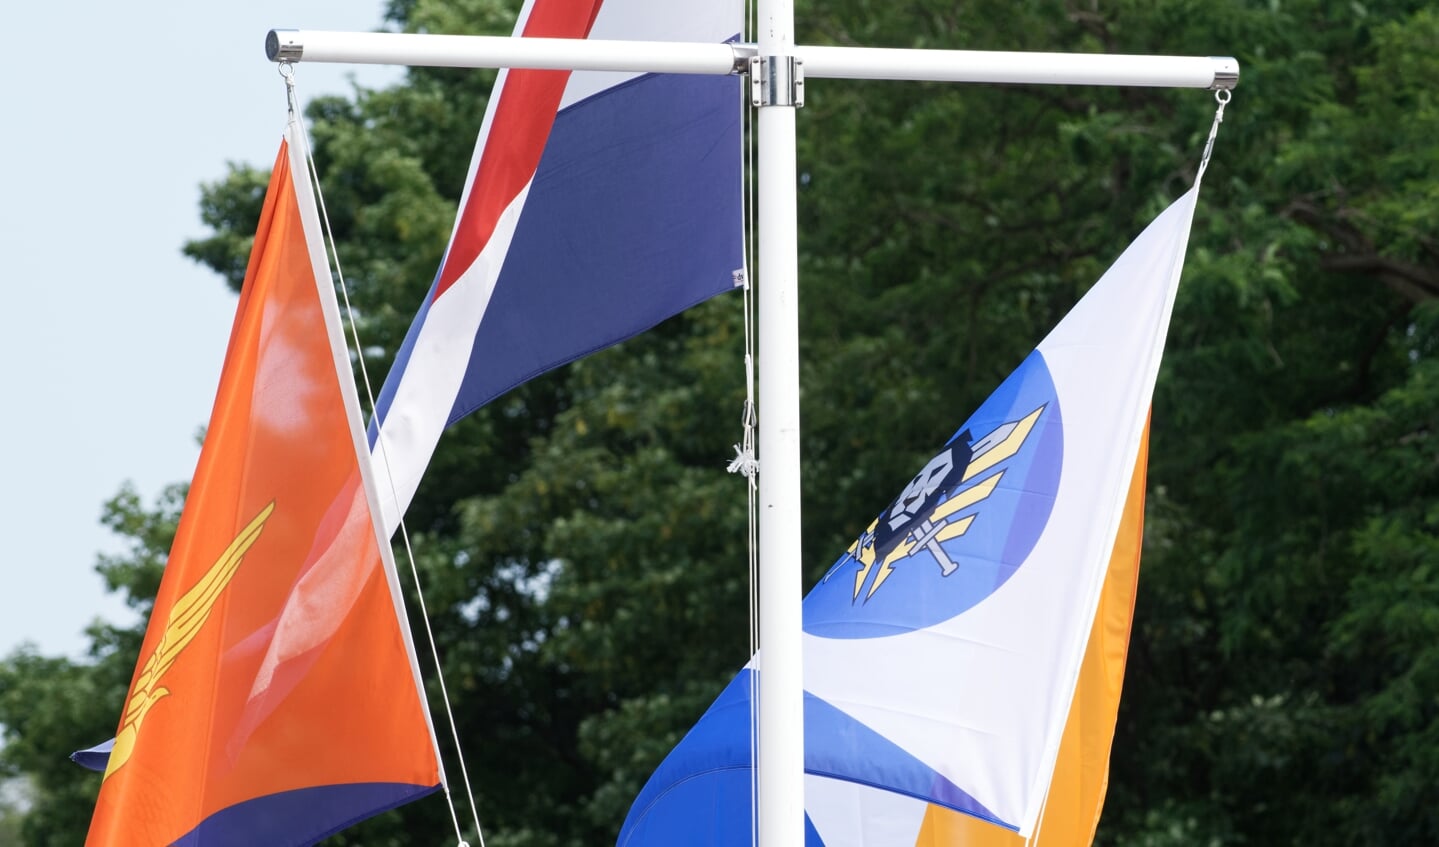 Nederlandse vlag, Koninklijke Luchtmachtvlag en ACC vlag in top.